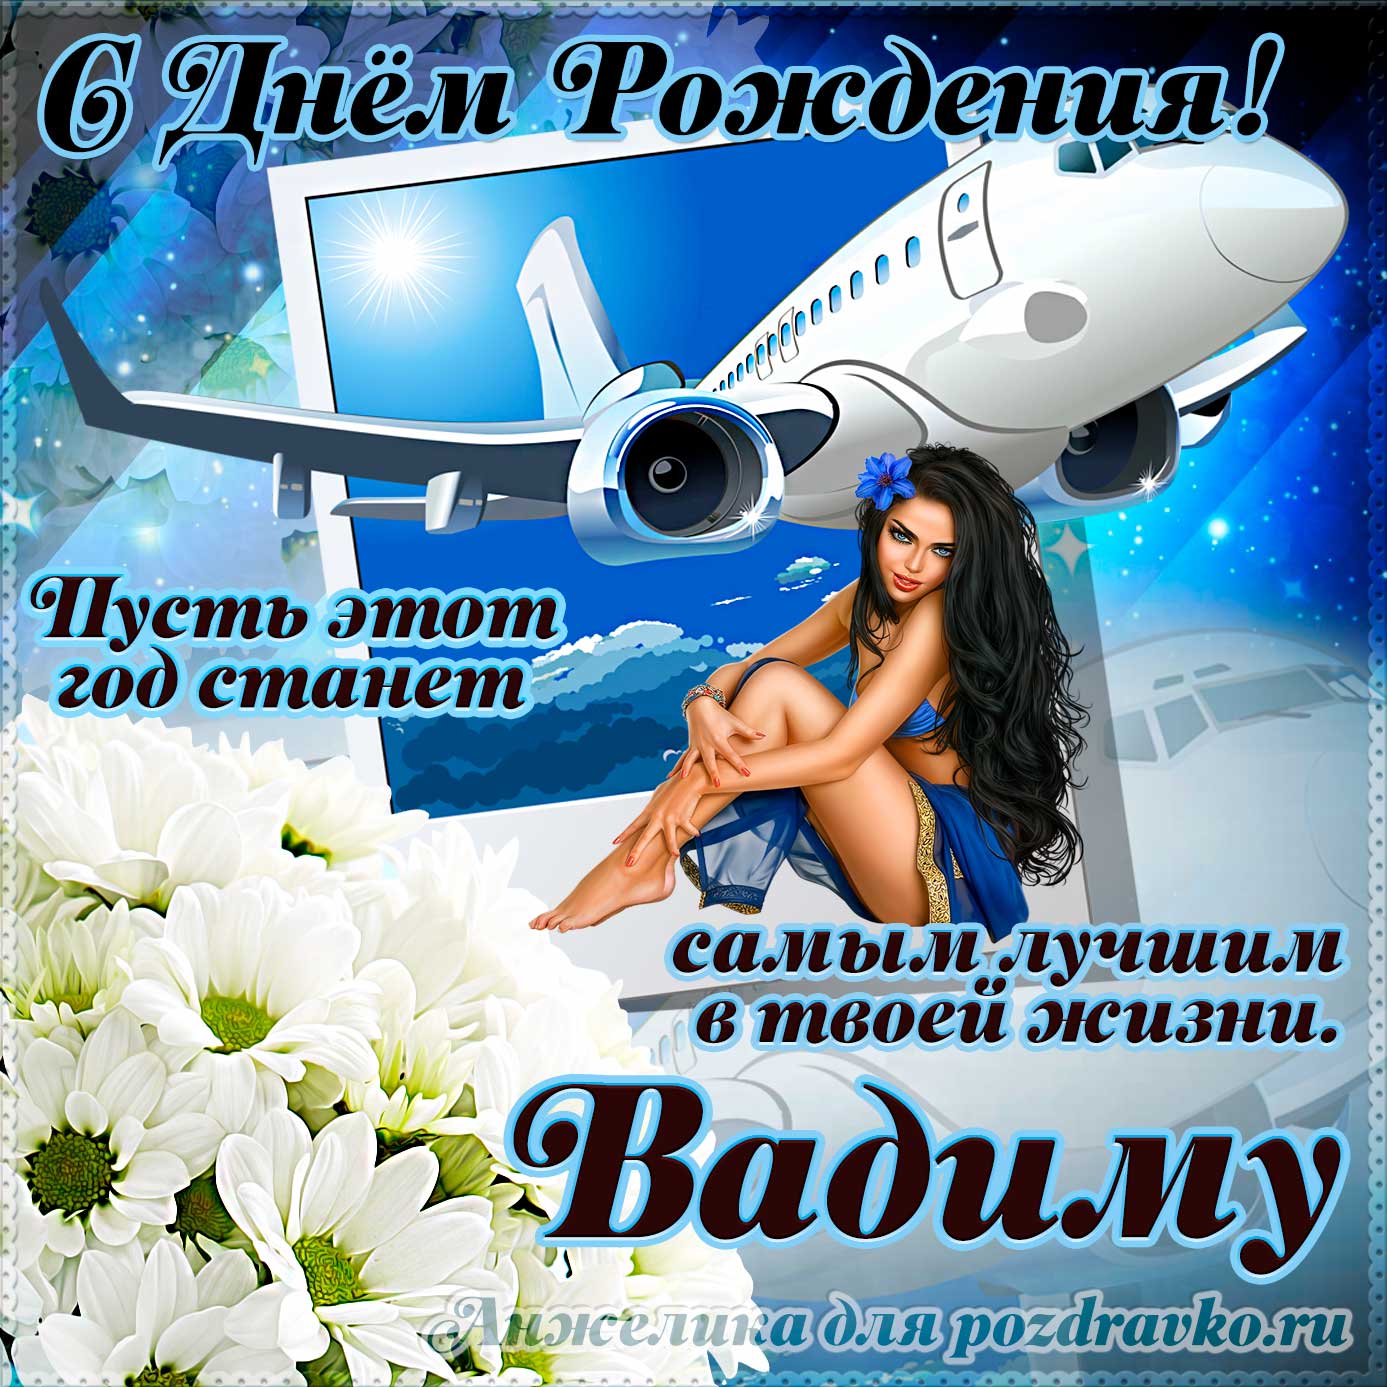 Открытка - Вадиму на день рождения с красивым пожеланием самолетом и девушкой. Скачать бесплатно или отправить картинку.